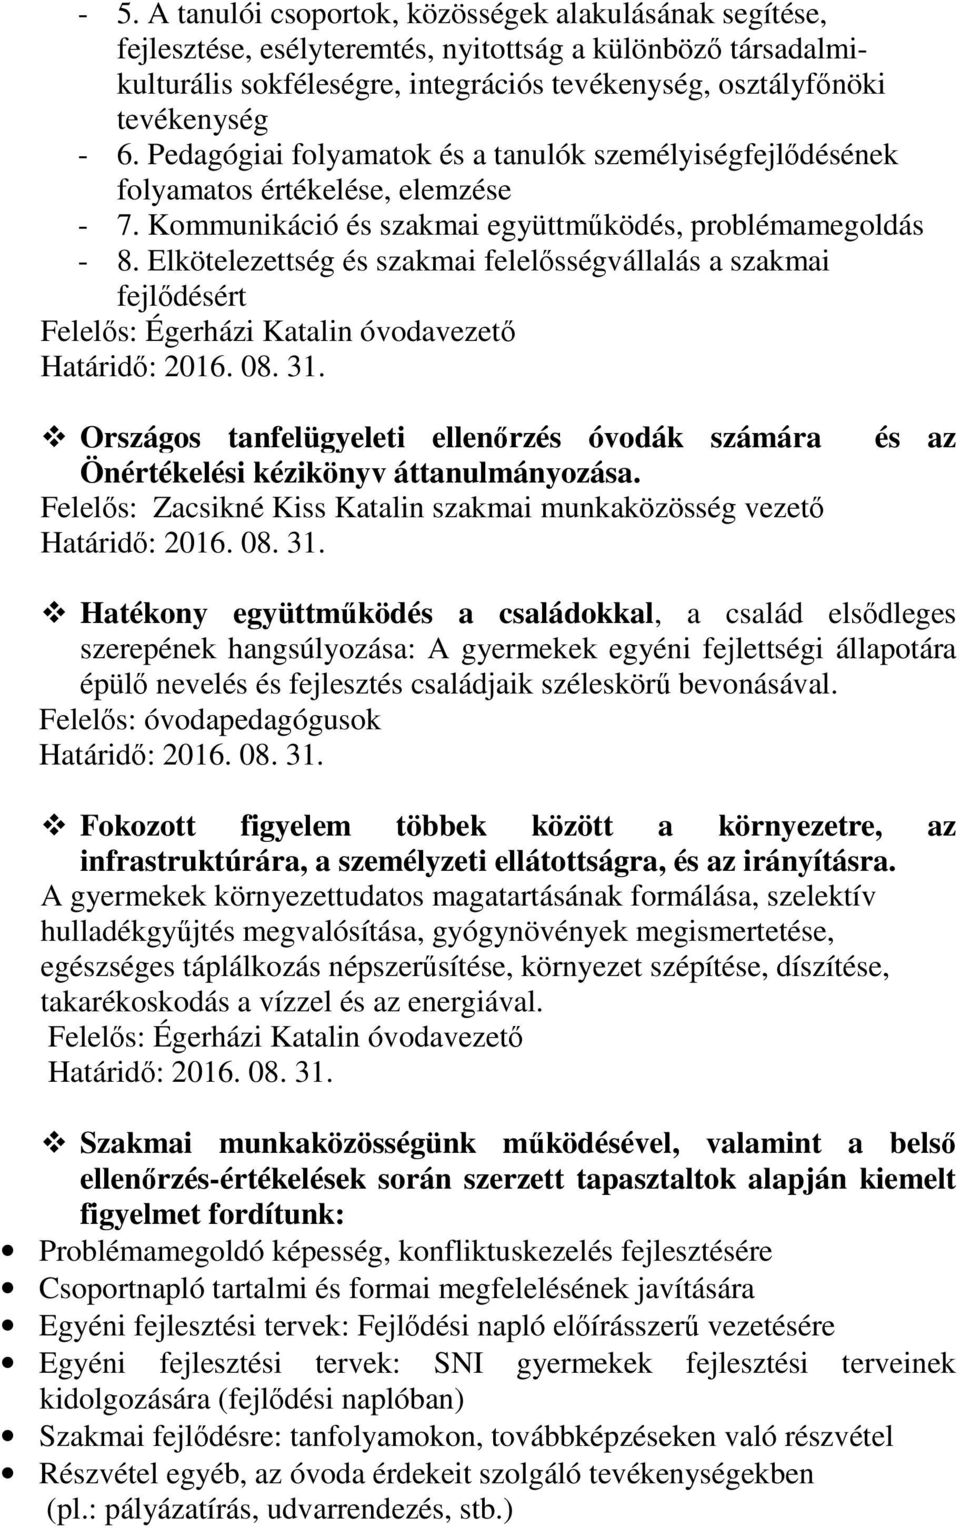 Elkötelezettség és szakmai felelősségvállalás a szakmai fejlődésért Felelős: Égerházi Katalin óvodavezető Határidő: 2016. 08. 31.